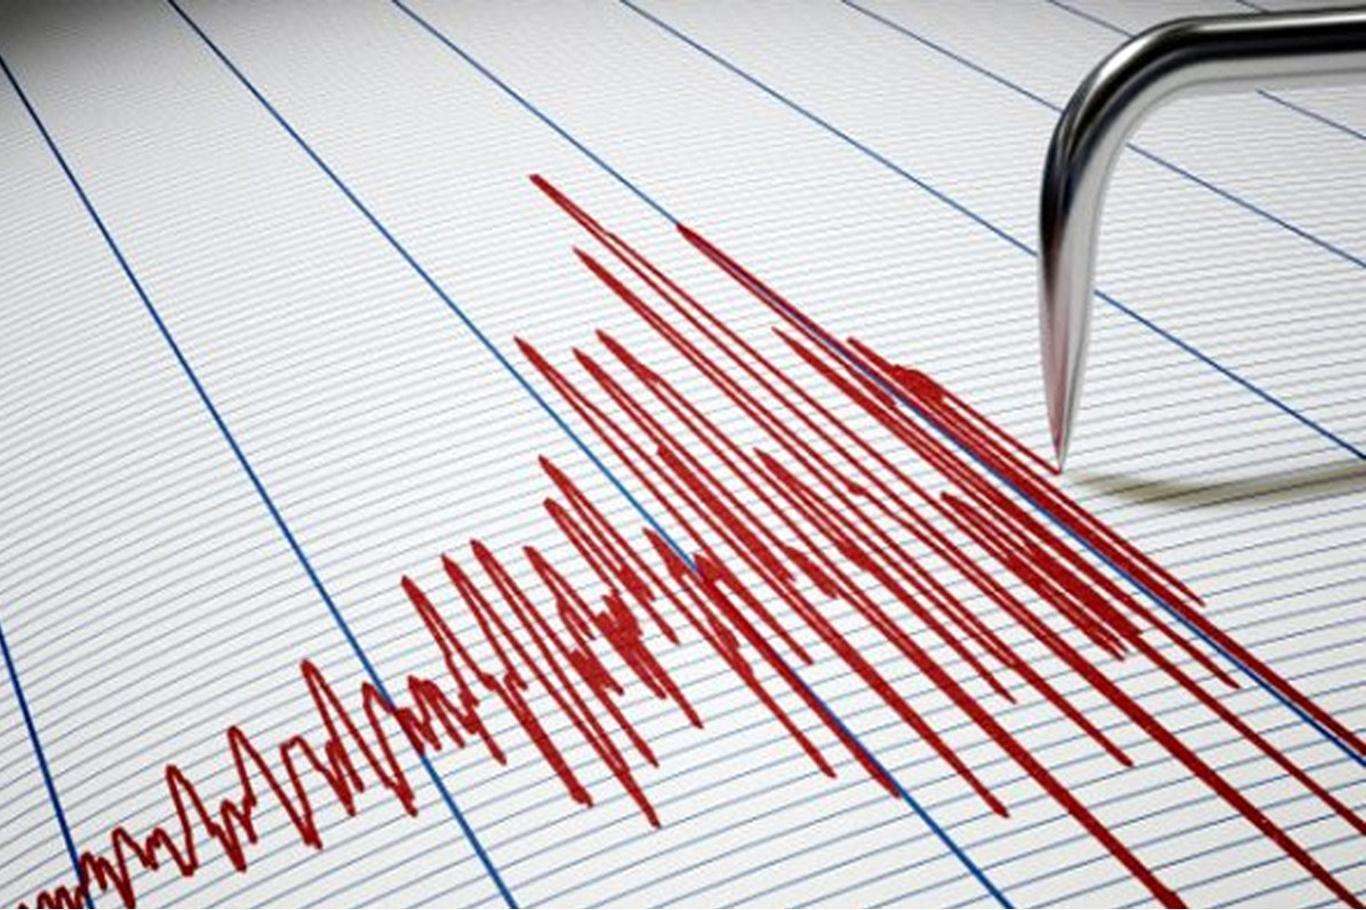 4.8 magnitude earthquake hits Indonesia, killing at least 3 people